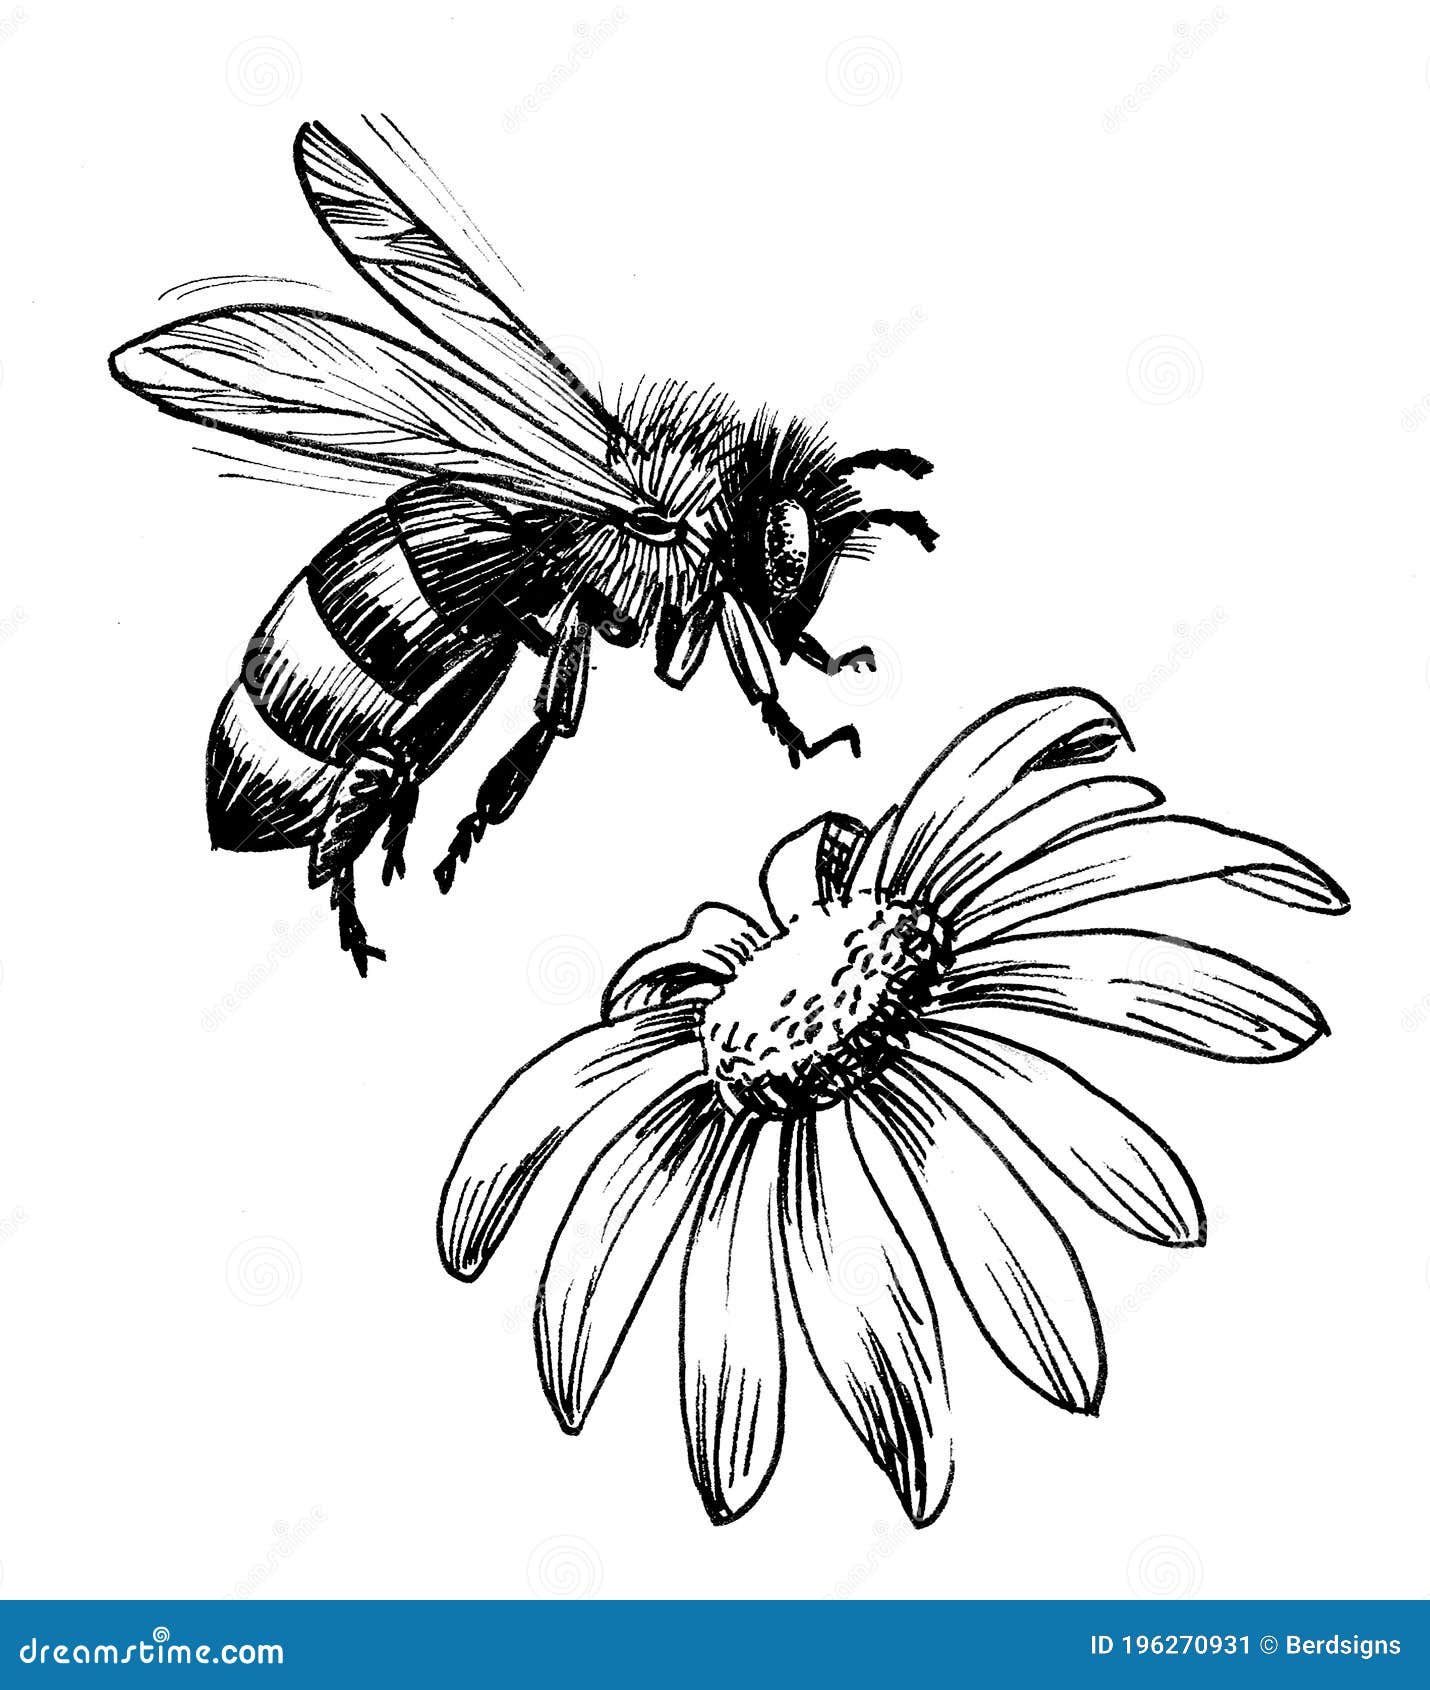 10782 Bee Flower Sketch Images Stock Photos  Vectors  Shutterstock